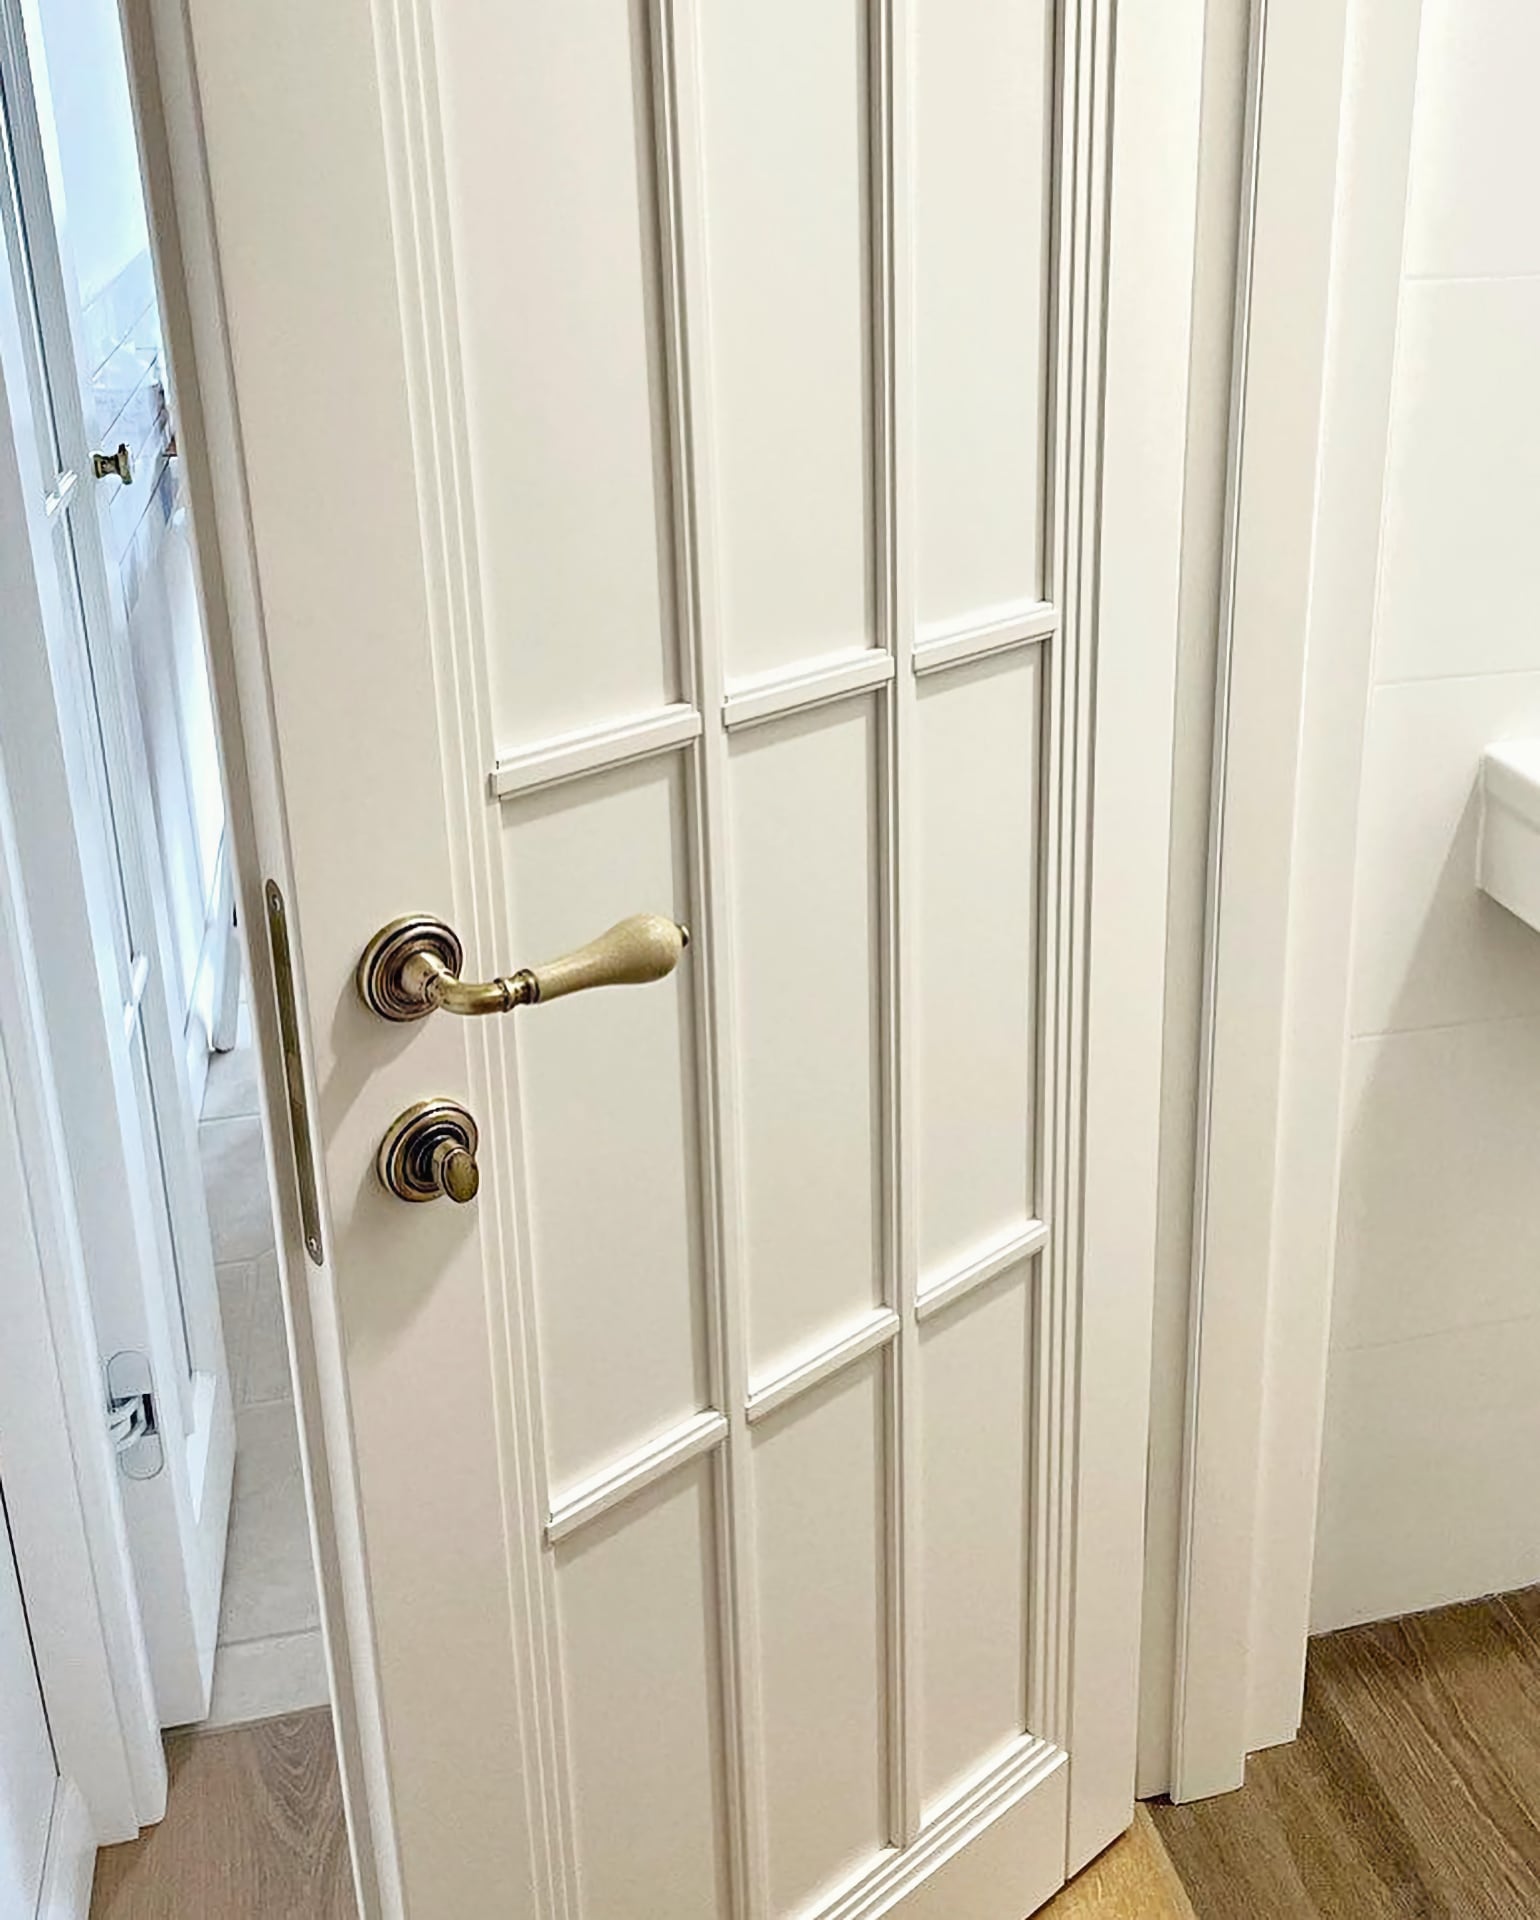 Дверь белая межкомнатная – глухое полотно, видно качественную фурнитуру с защёлкой